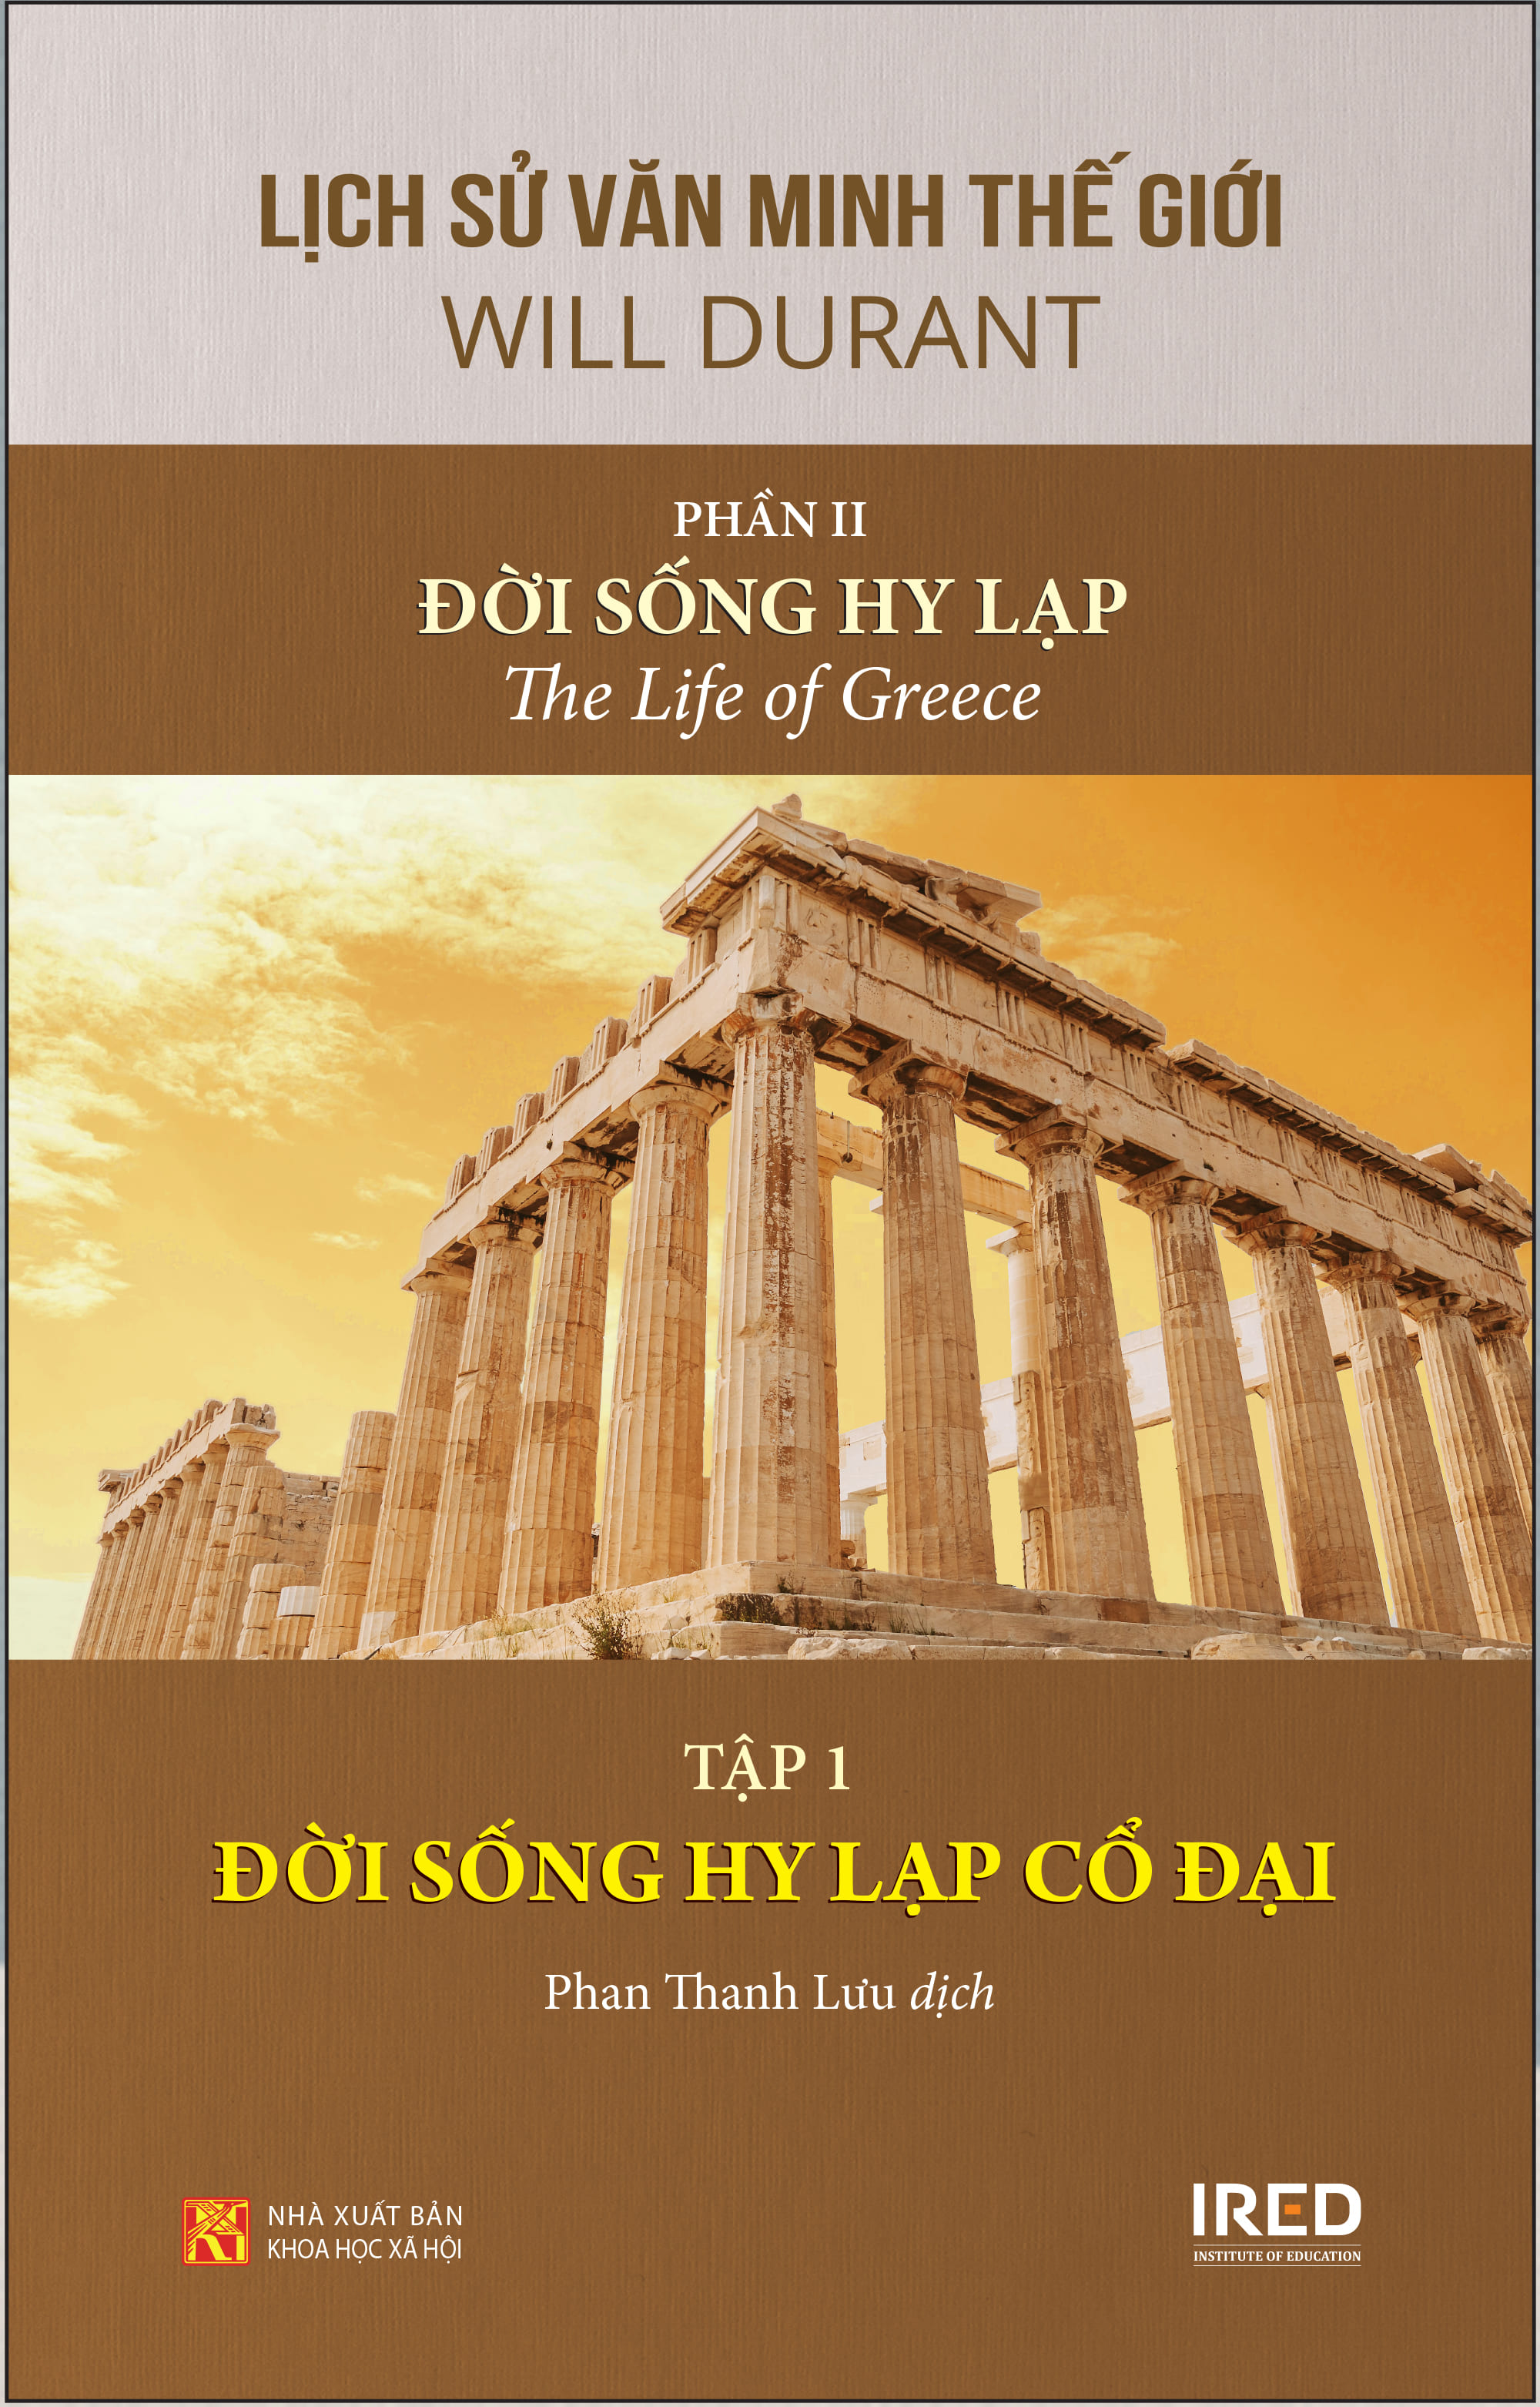 [Coupon 20K đơn 299K] Sách IRED Books - Lịch sử văn minh thế giới phần 2:  Đời sống Hy Lạp - Will Durant